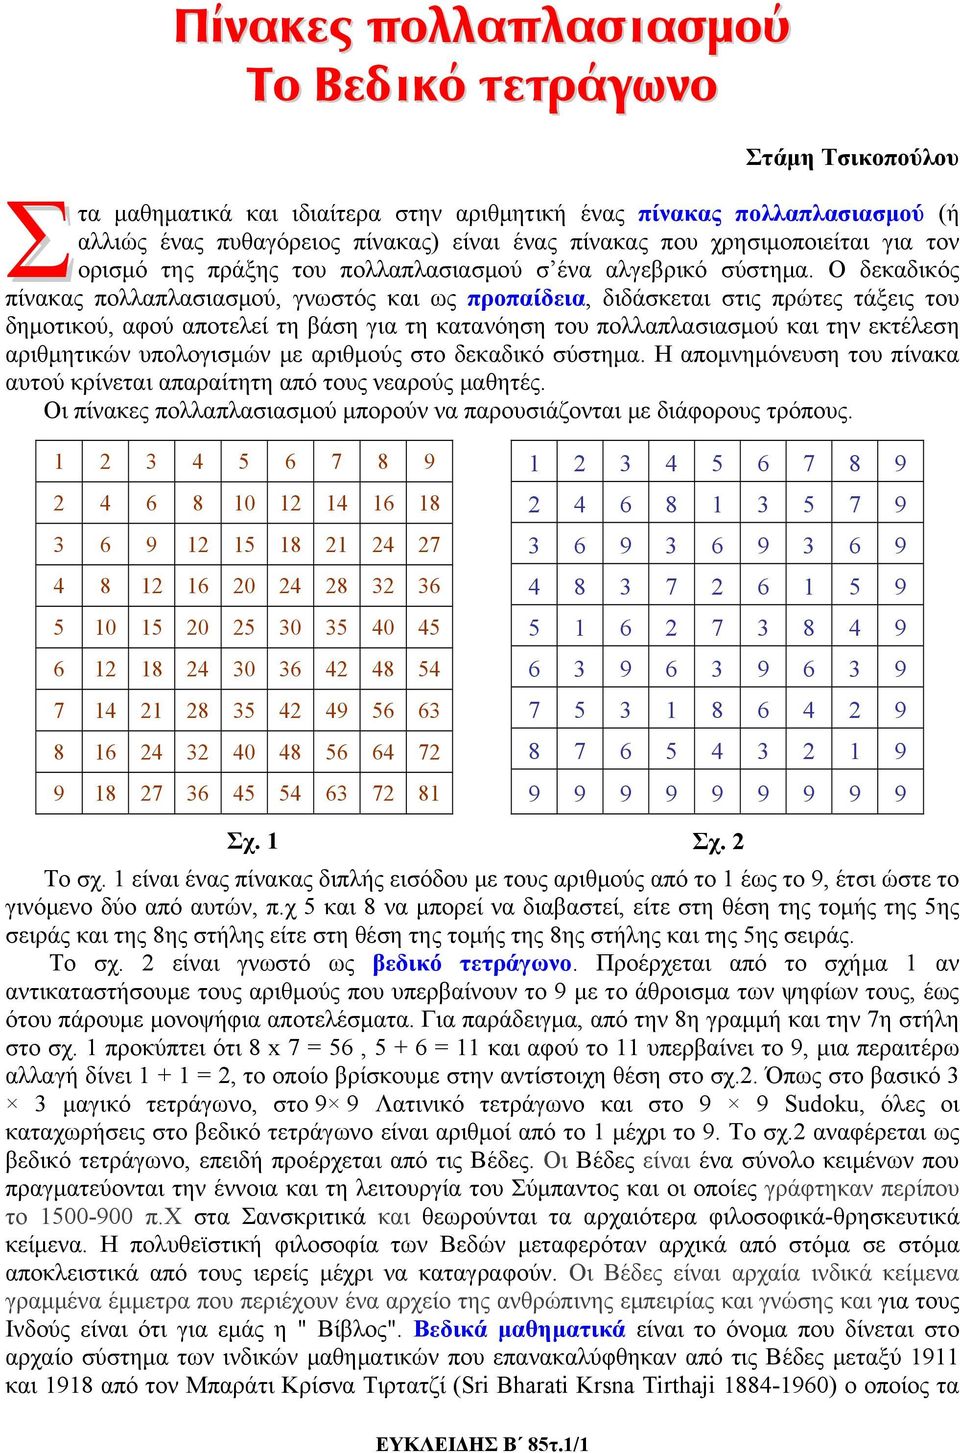 Ο δεκαδικός πίνακας πολλαπλασιασμού, γνωστός και ως προπαίδεια, διδάσκεται στις πρώτες τάξεις του δημοτικού, αφού αποτελεί τη βάση για τη κατανόηση του πολλαπλασιασμού και την εκτέλεση αριθμητικών